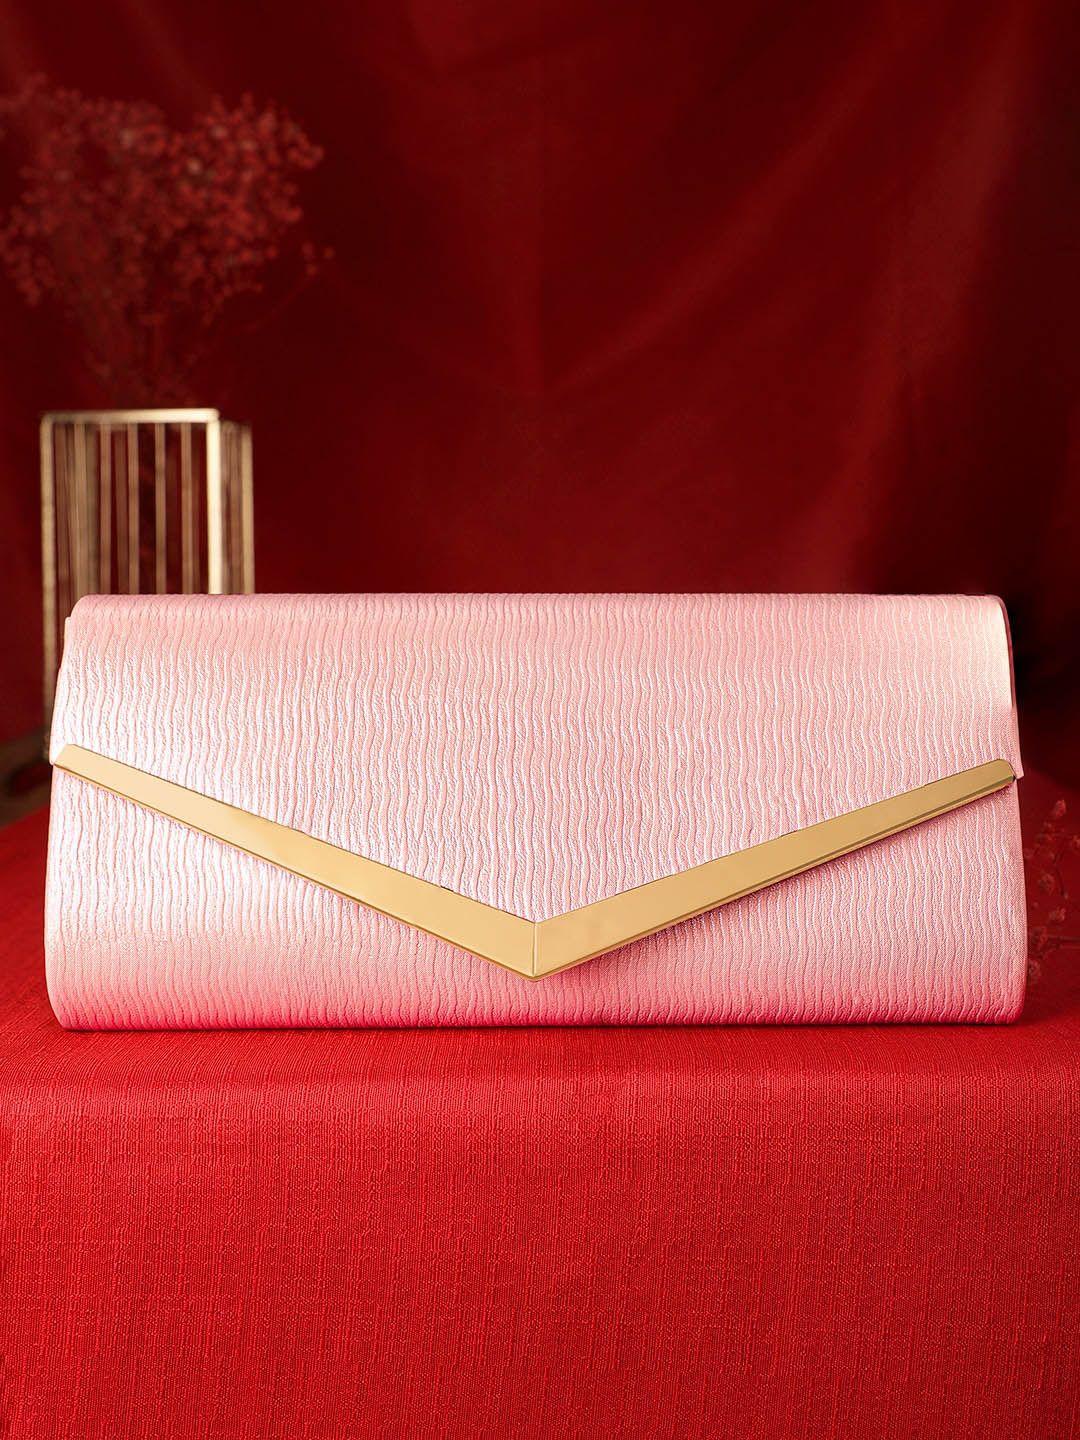 rubans pink embellished structured handheld bag